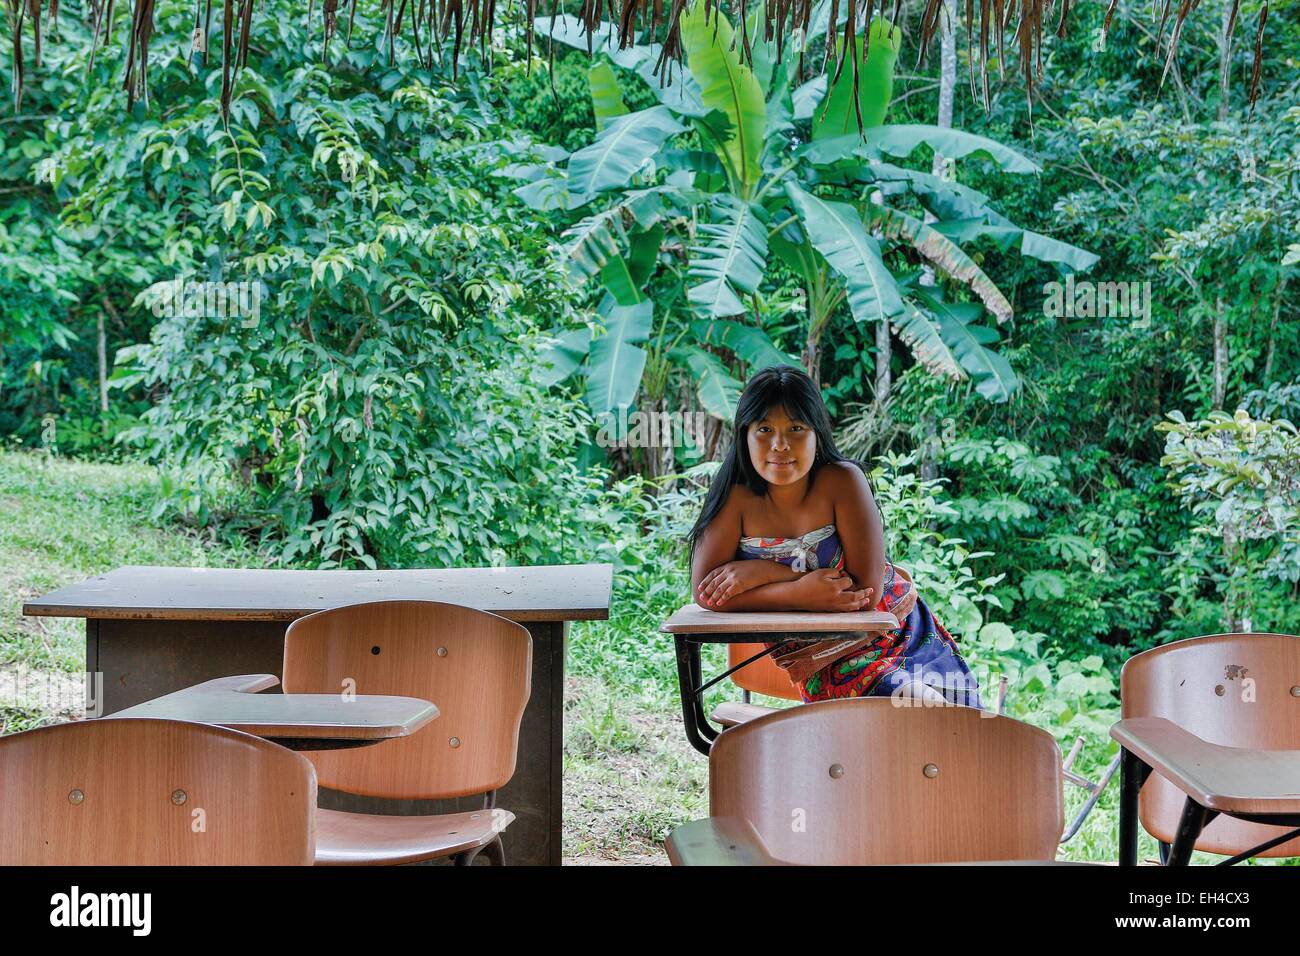 Panama, provincia di Darien, Parco Nazionale del Darién, classificato come patrimonio mondiale dall UNESCO, Embera comunità indigena, ritratto di una giovane Embera nativo in una vegetazione tropicale, seduti a un tavolo di scuola all'aperto Foto Stock